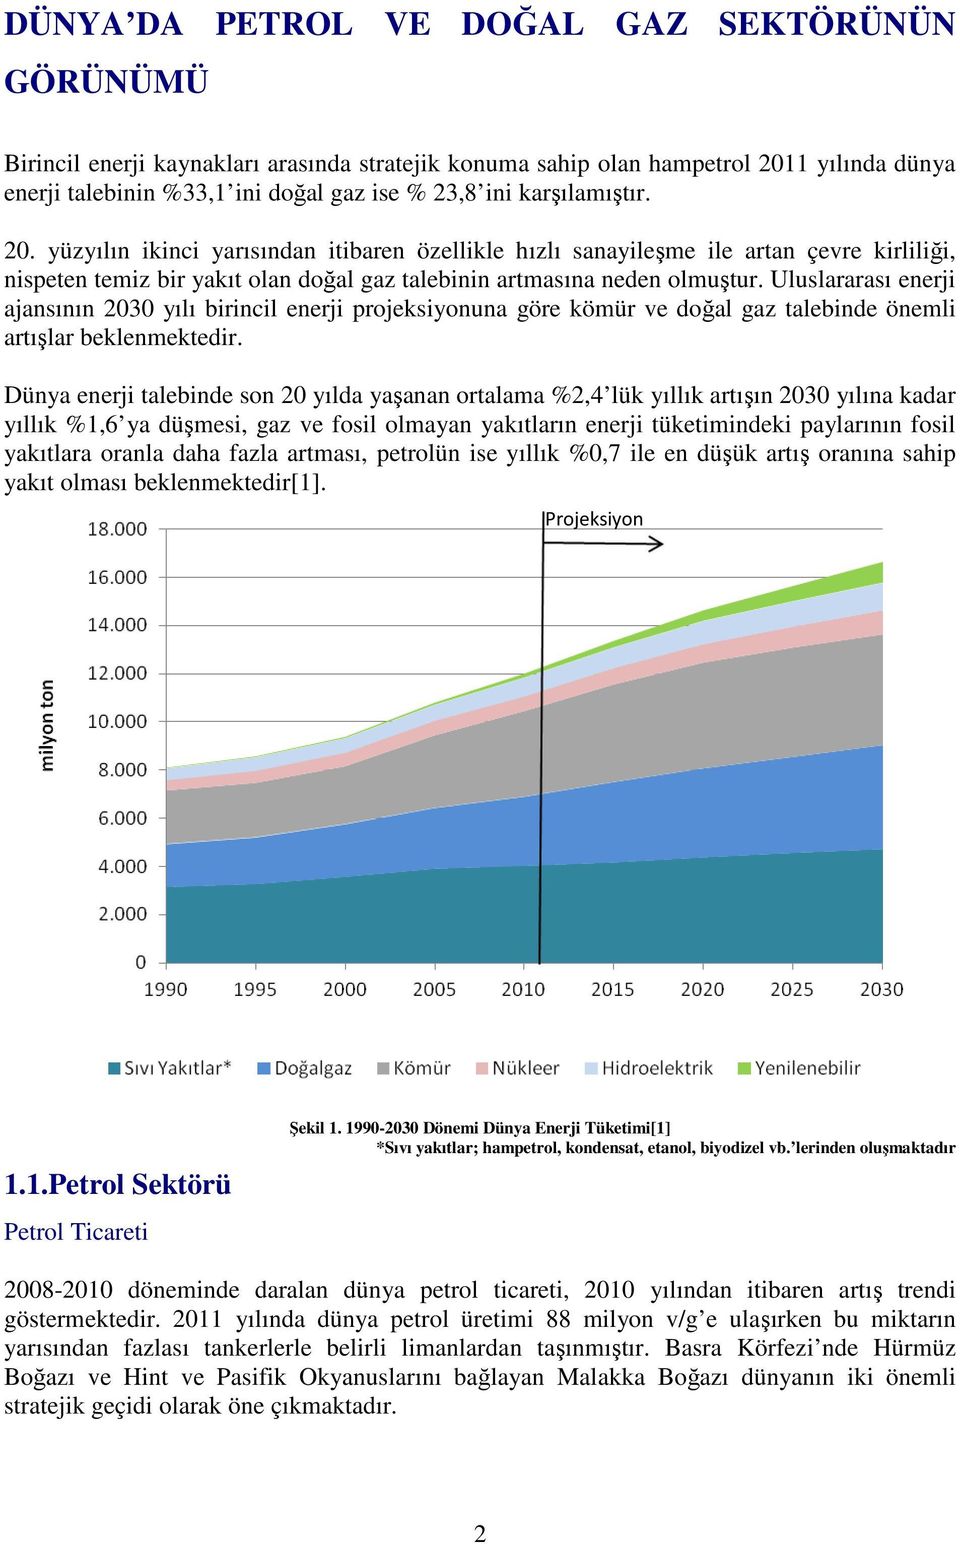 Uluslararası enerji ajansının 2030 yılı birincil enerji projeksiyonuna göre kömür ve doğal gaz talebinde önemli artışlar beklenmektedir.